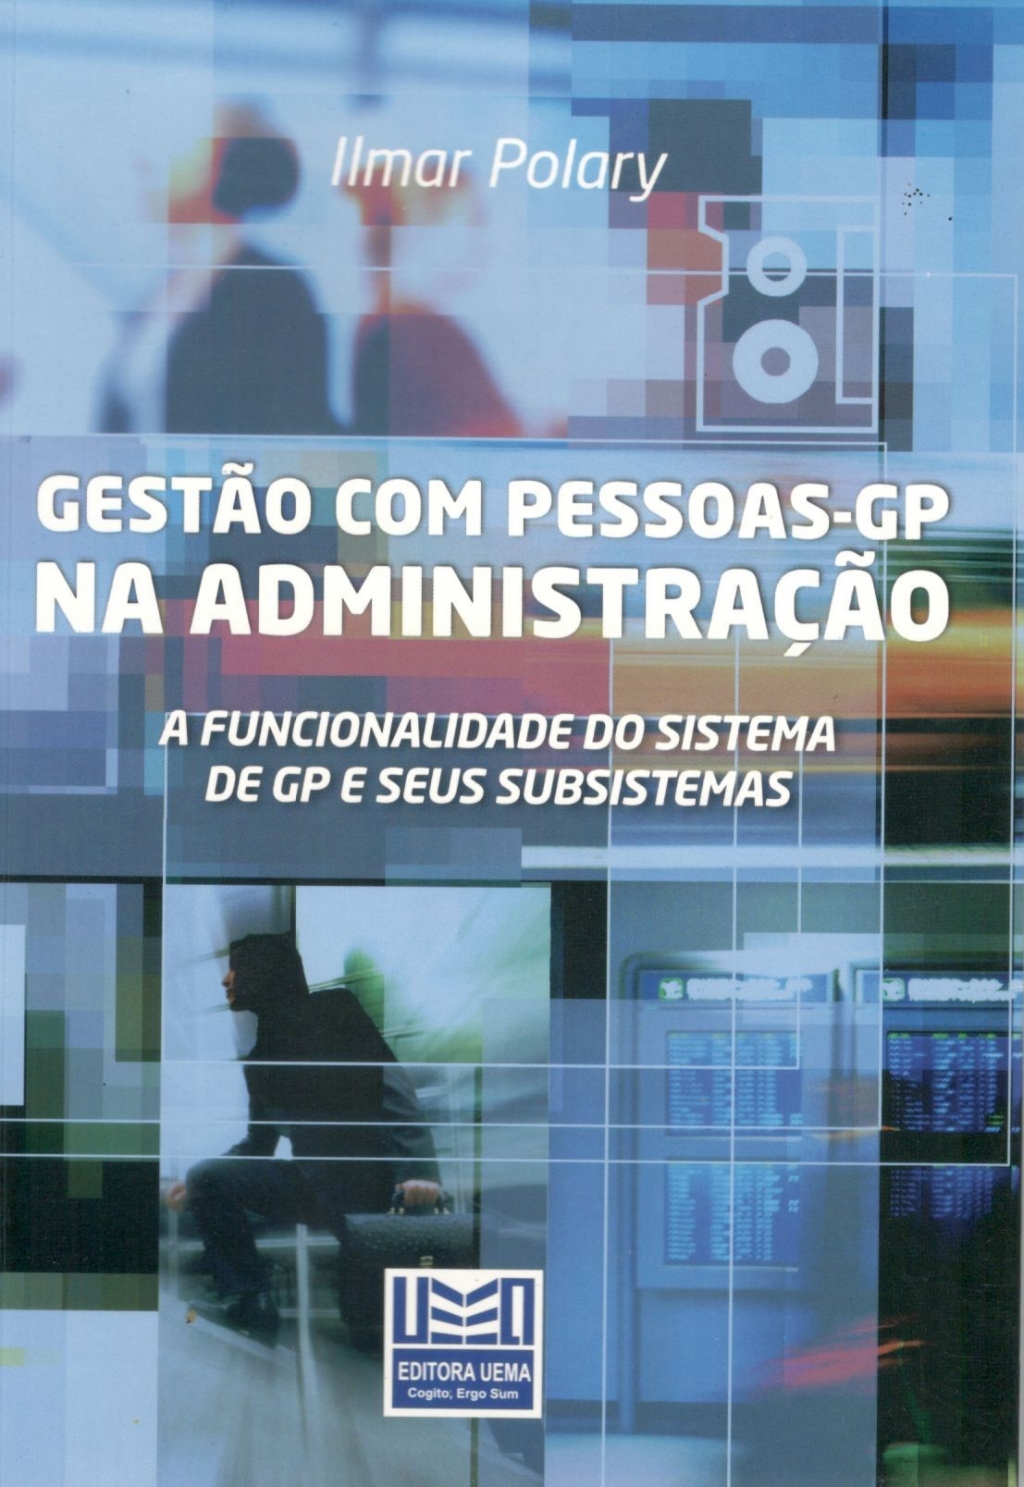 Gestão com pessoas - GP na Administração A funcionalidade do sistema de GP e seus subsistemas (ESGOTADO)